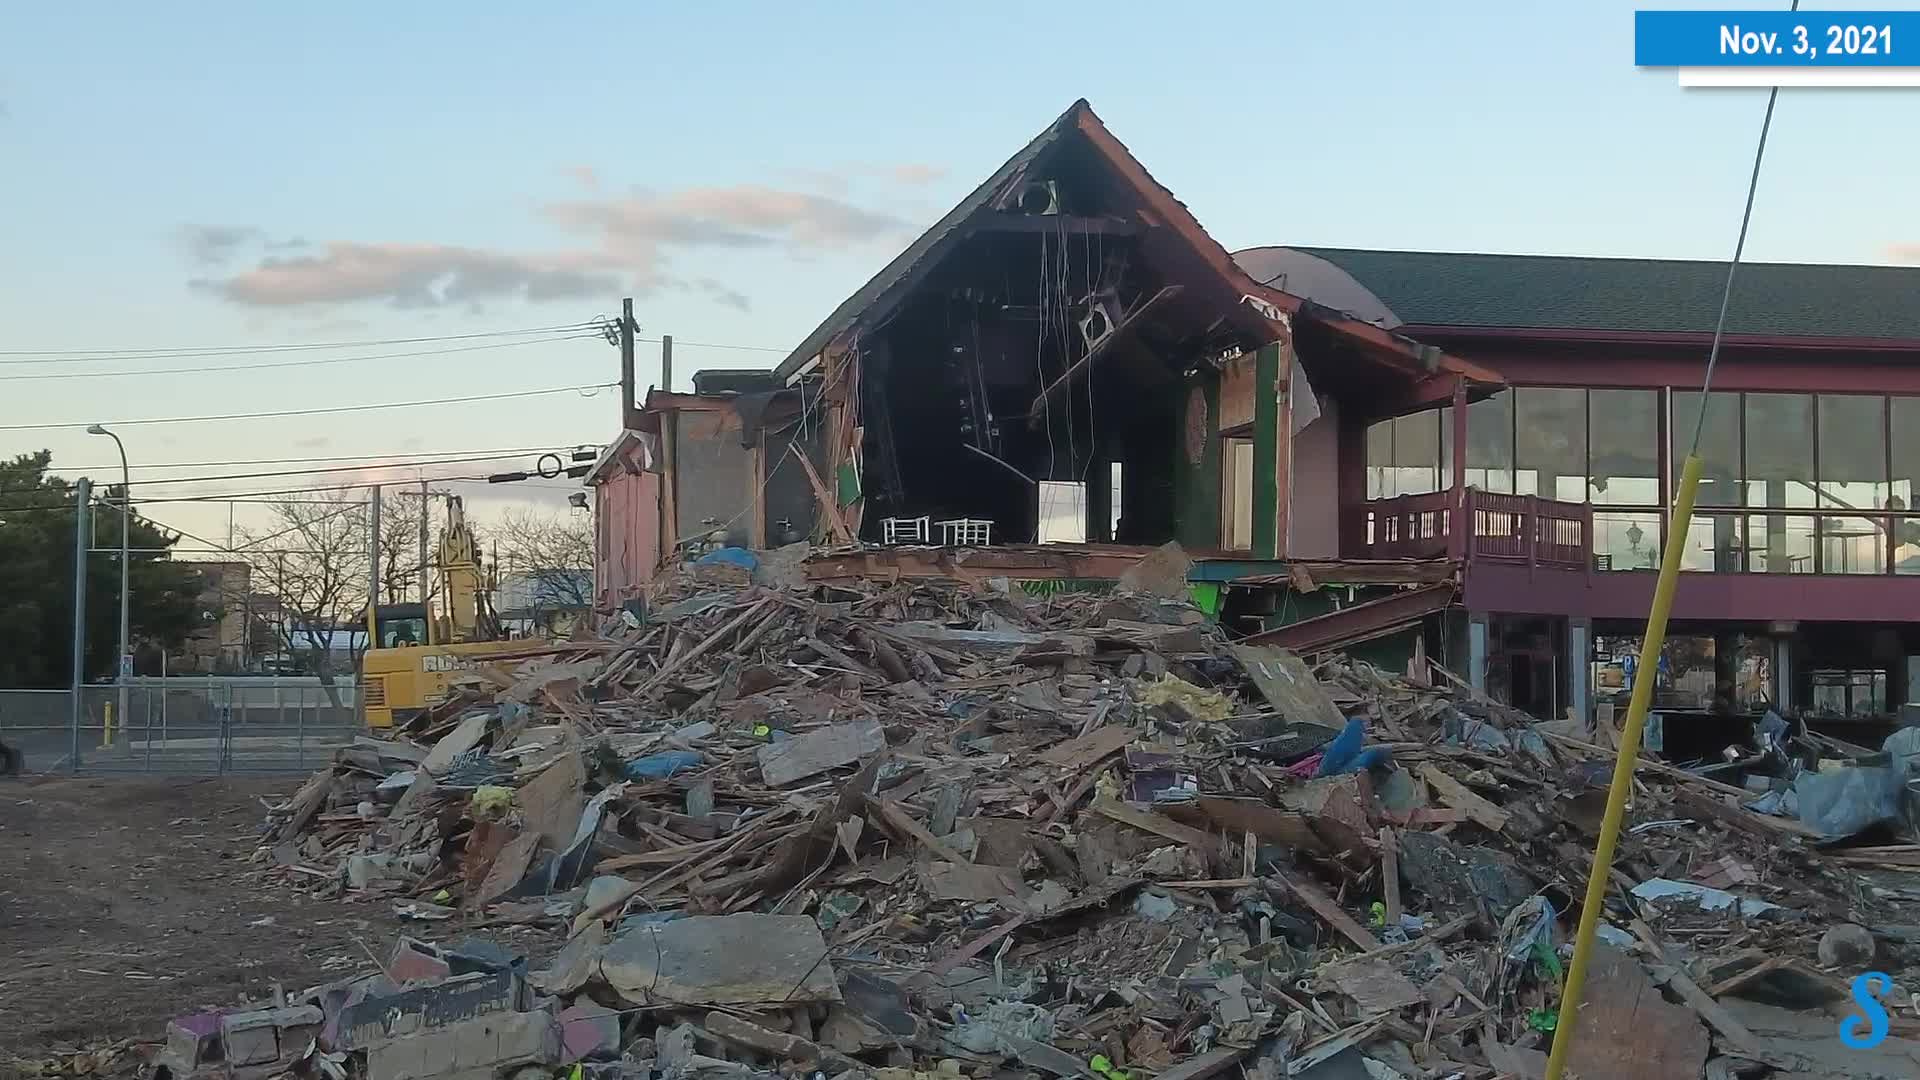 Bamboo Demolition, Seaside Heights, N.J., Nov. 3, 2021